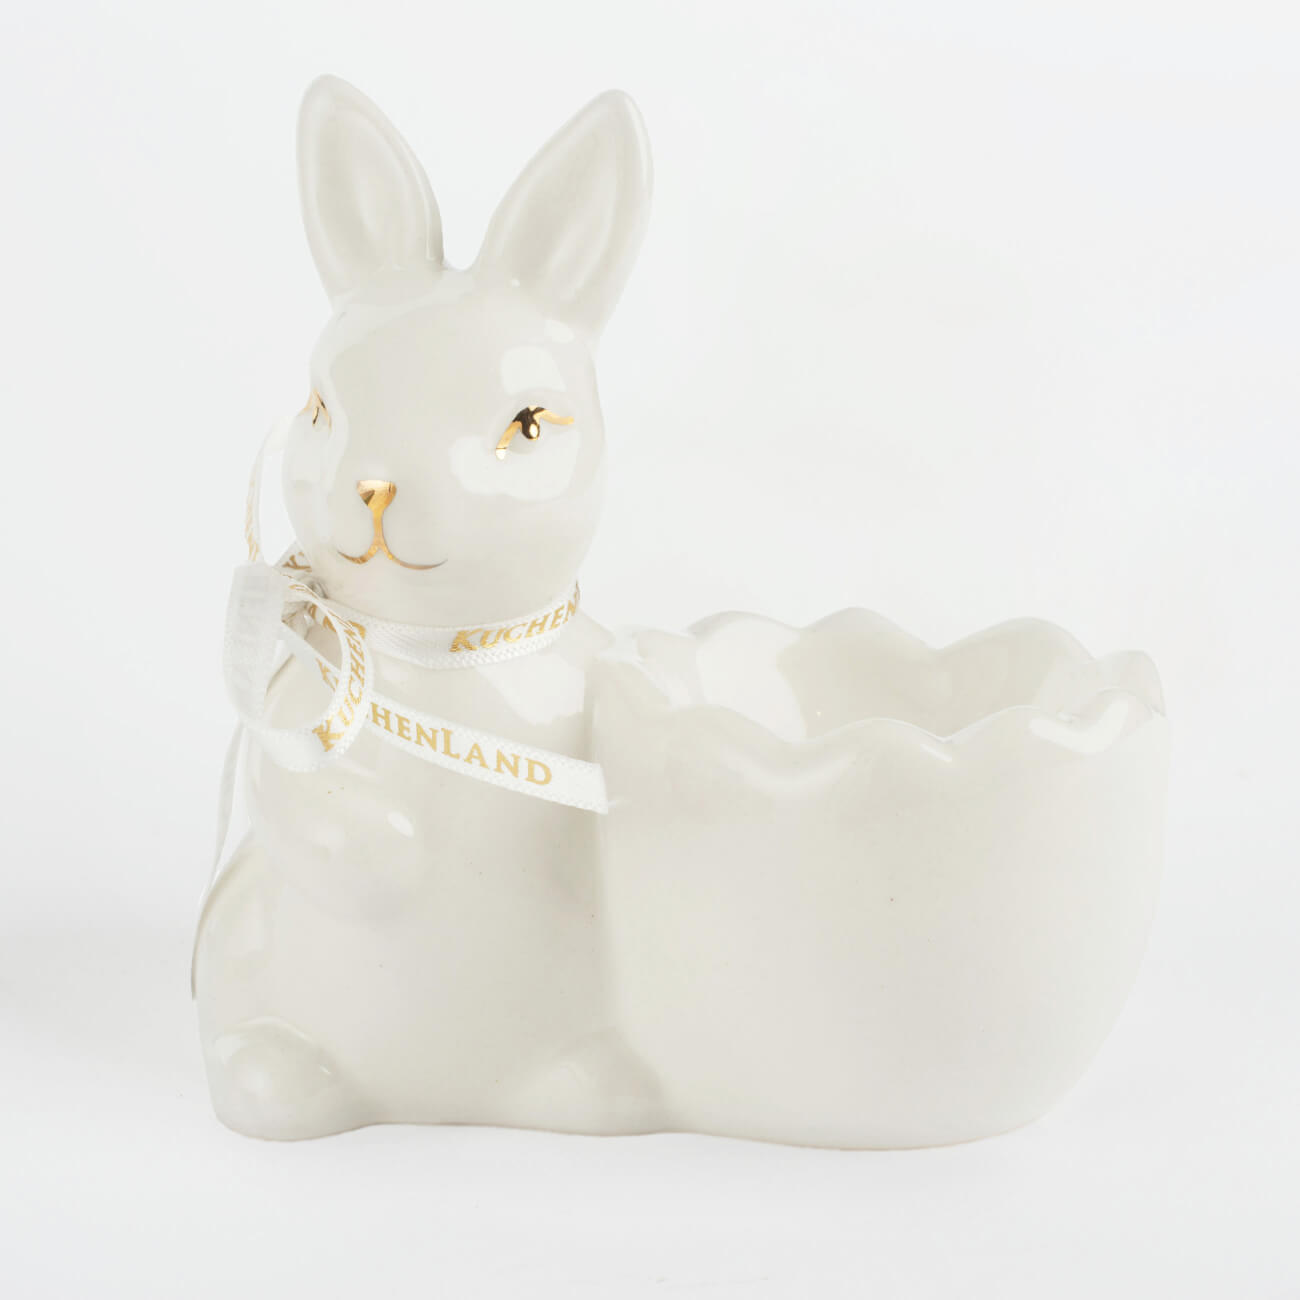 Подставка для яйца, 10 см, керамика, бело-золотистая, Кролик со скорлупкой, Easter gold подставка для яйца 11 см фарфор p бело серая кролик со скорлупой pure easter